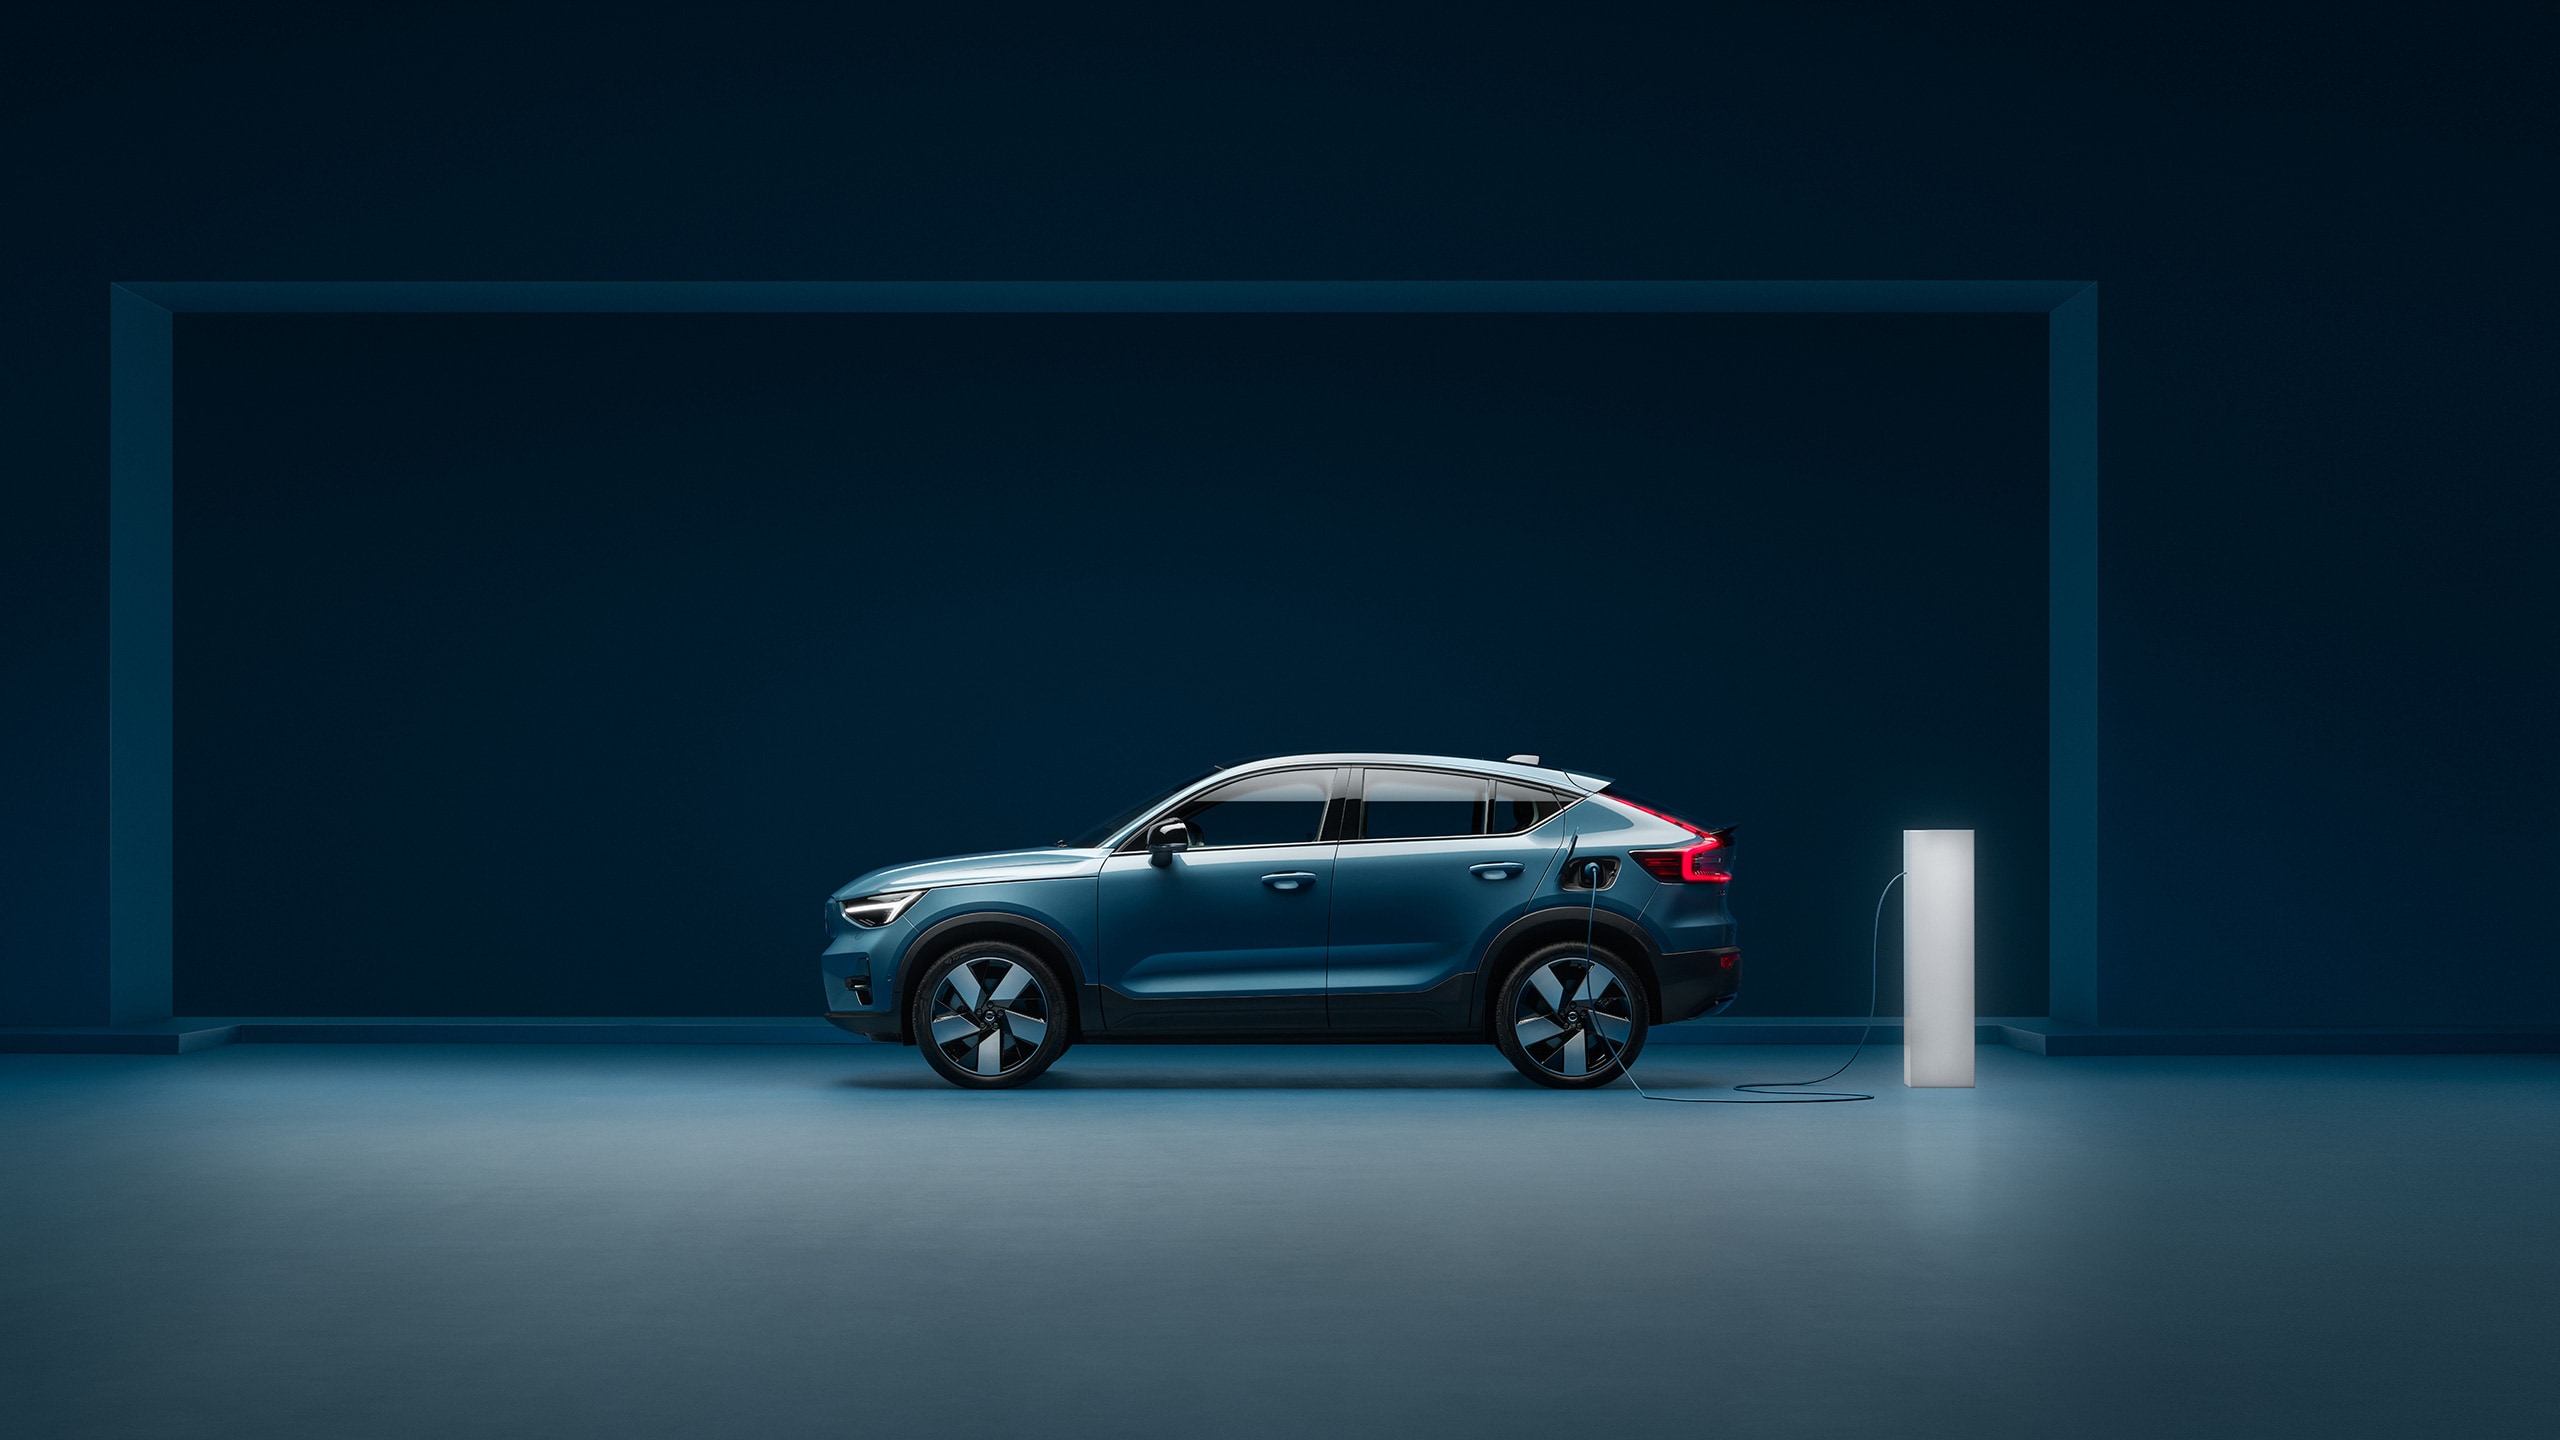 Le nouveau Volvo C40 Recharge dans un environnement bleu